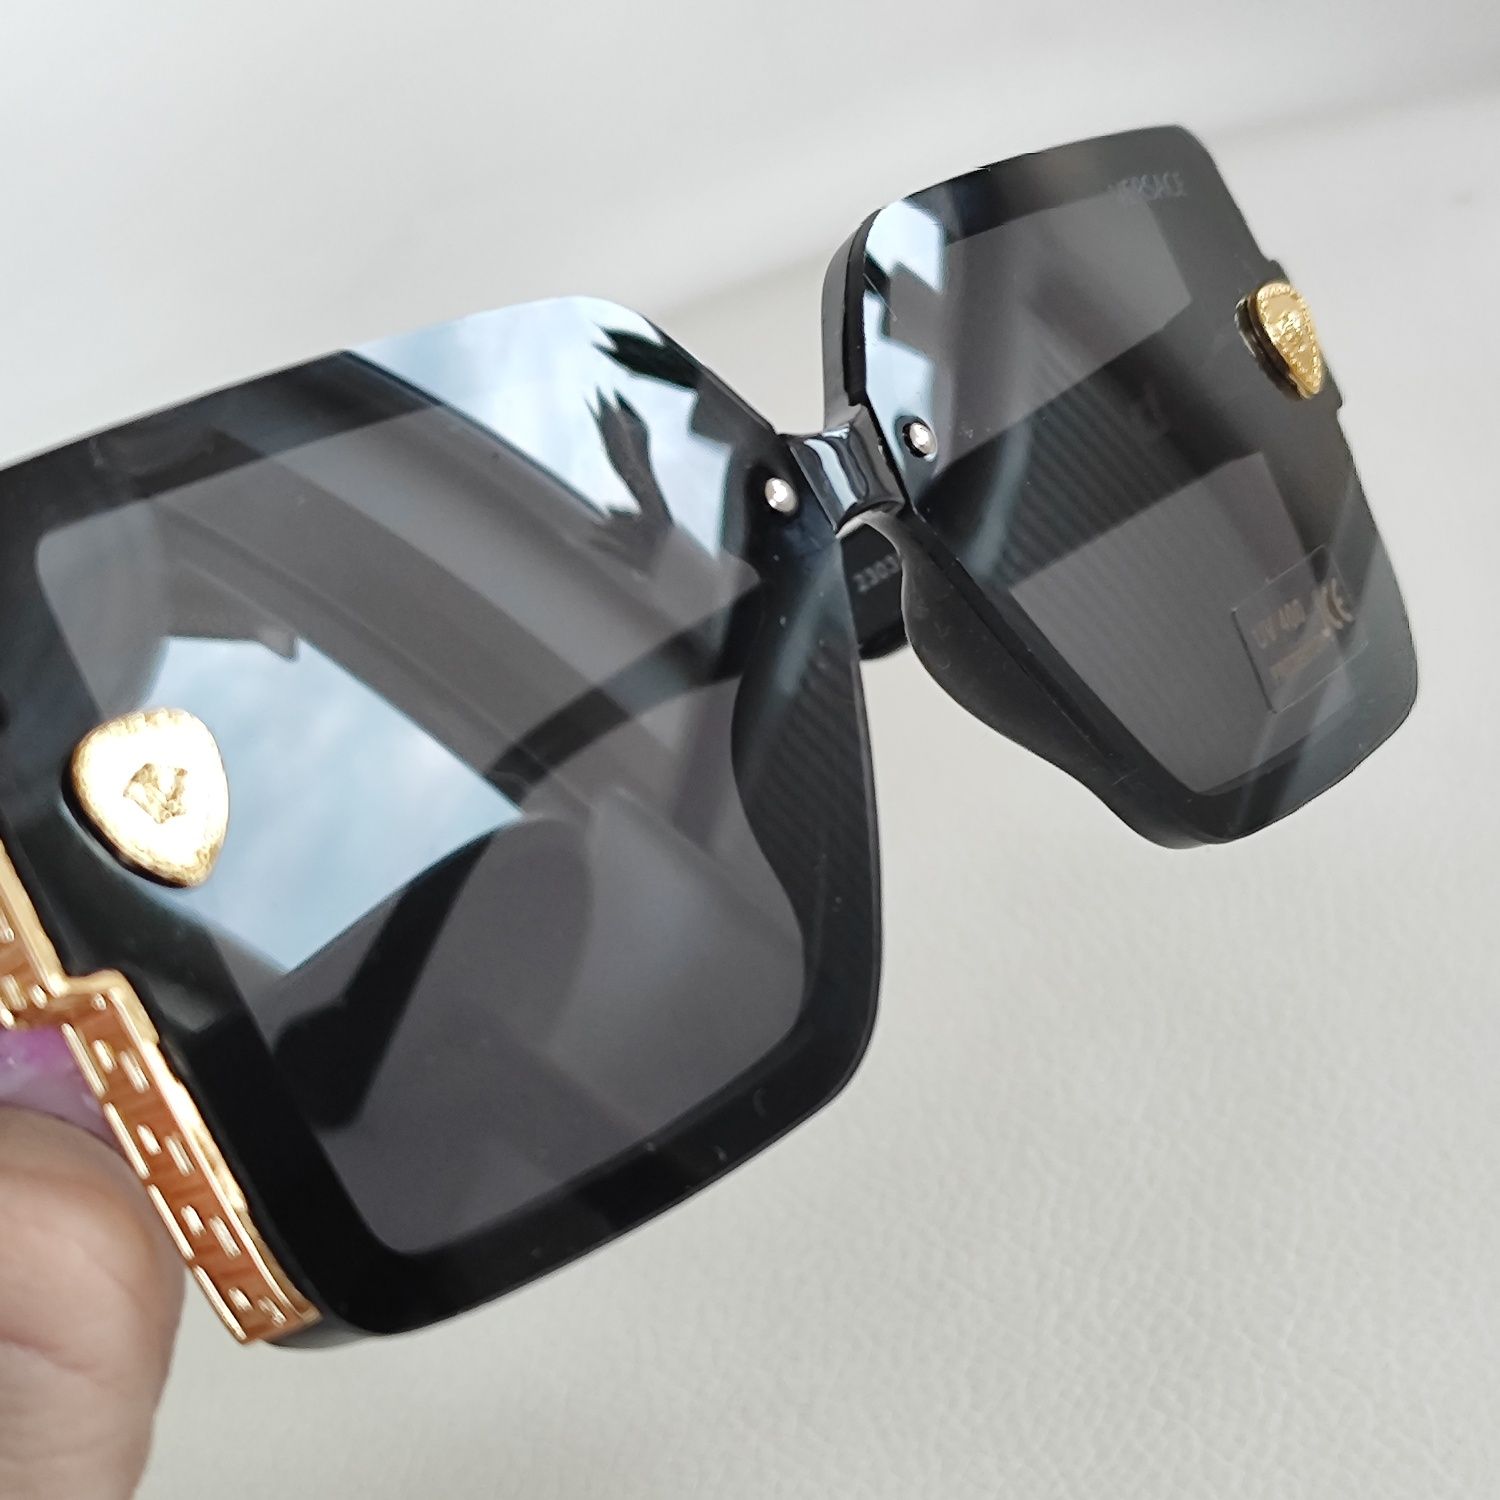 Okulary damskie okularki UV400 ochrona Versace czarne meduza